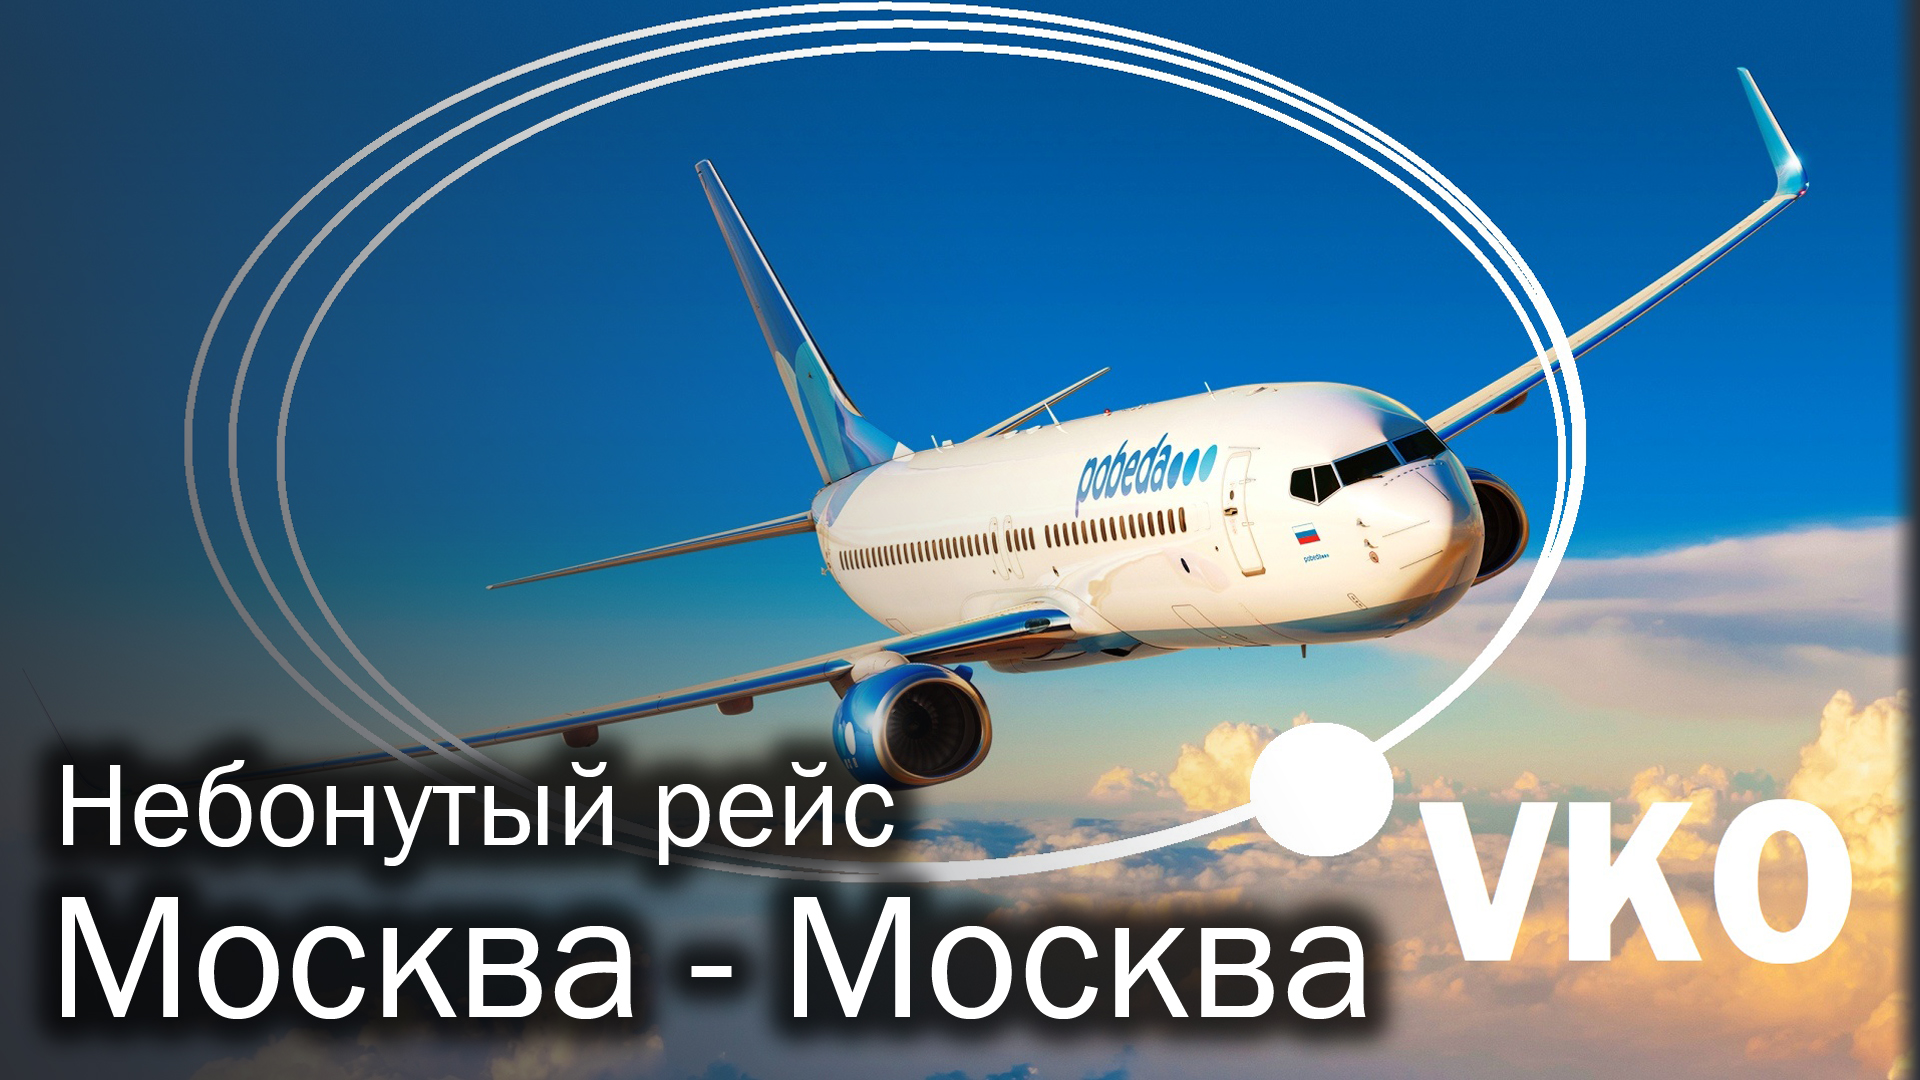 Хочу полететь в москву. Лечу в Москву. Круговой самолет. Круговой рейс.